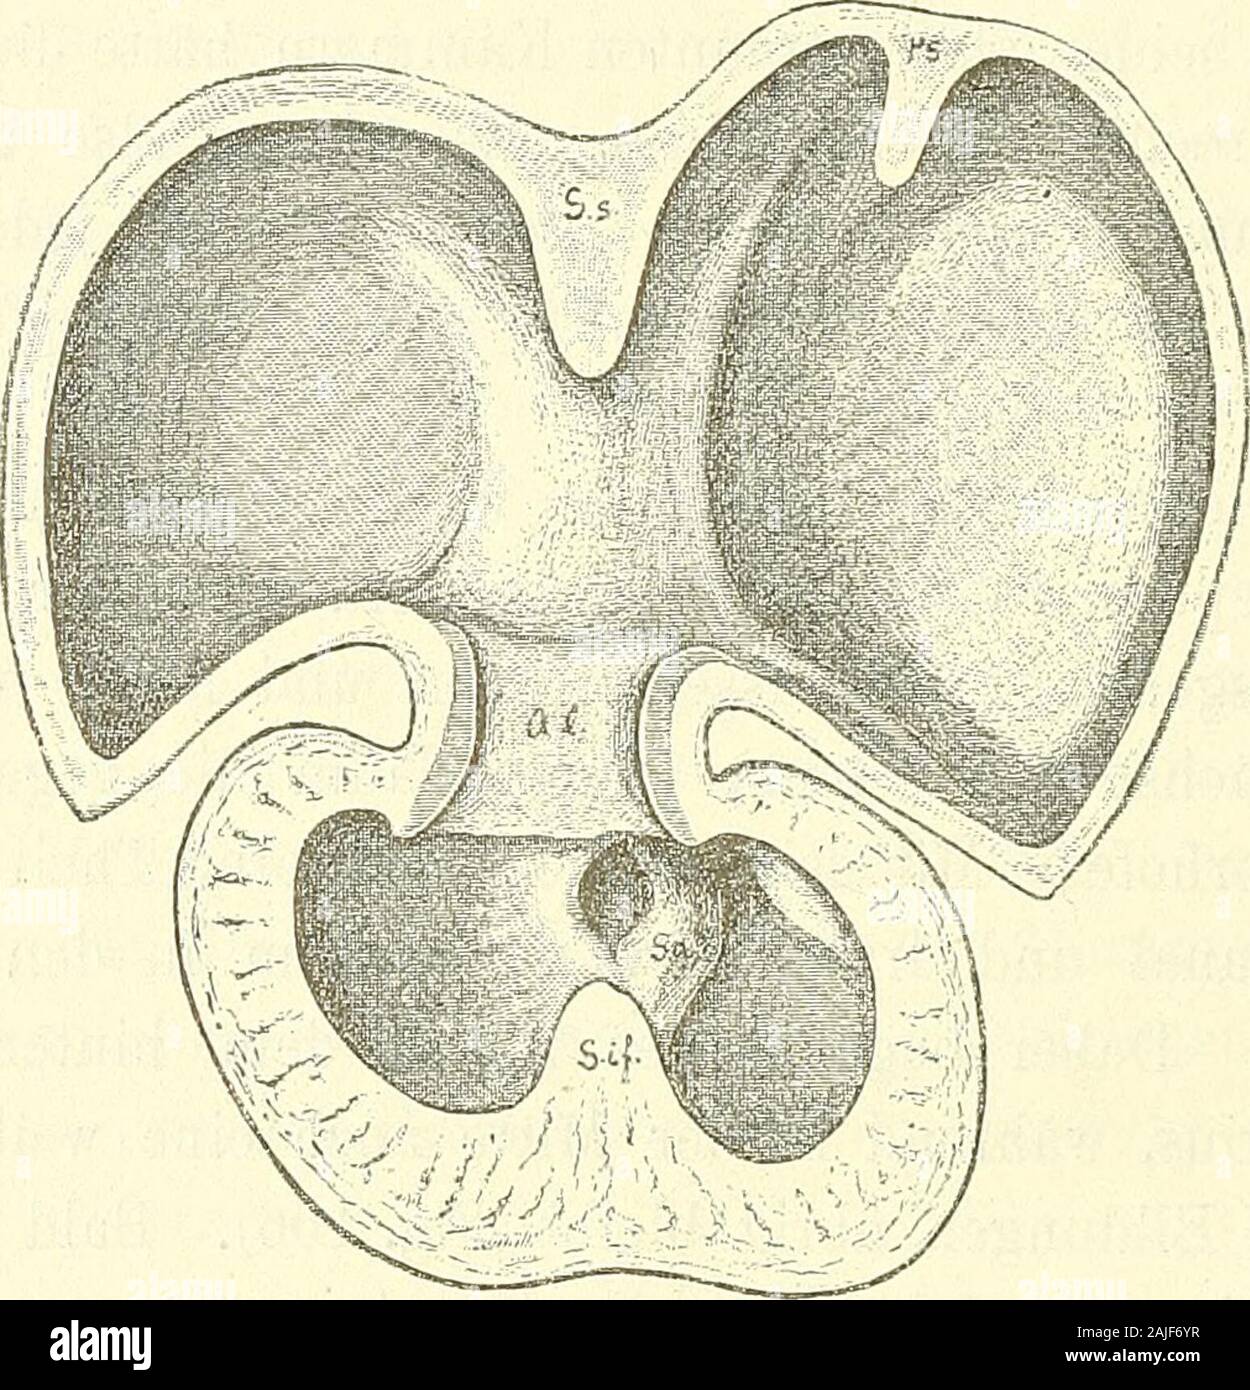 Anatomie menschlicher Embryonen . sste abgeschnitten werden.Dies wird indessen vermieden: der vorderste Theil des Septum in-ferius bleibt nach der Aorta hin frei, und dafür bildet sich eineVerwachsung zwischen dem Septum intermedium und dem unterstenEnde des Septum aorticum. Die nach ihrer primären Anlage demrechten Herzen und zwar dem Conus arteriosus angehörige Aortawird hierdurch vom rechten Ventrikel geschieden und durch denallervordersten, ausgespart bleibenden Theil des Ostium interventri- culare hindurch mit dem linken in Verbindung gelassen. 11* 164 Das Herz. Mit Hülfe der verschiedene Stock Photo